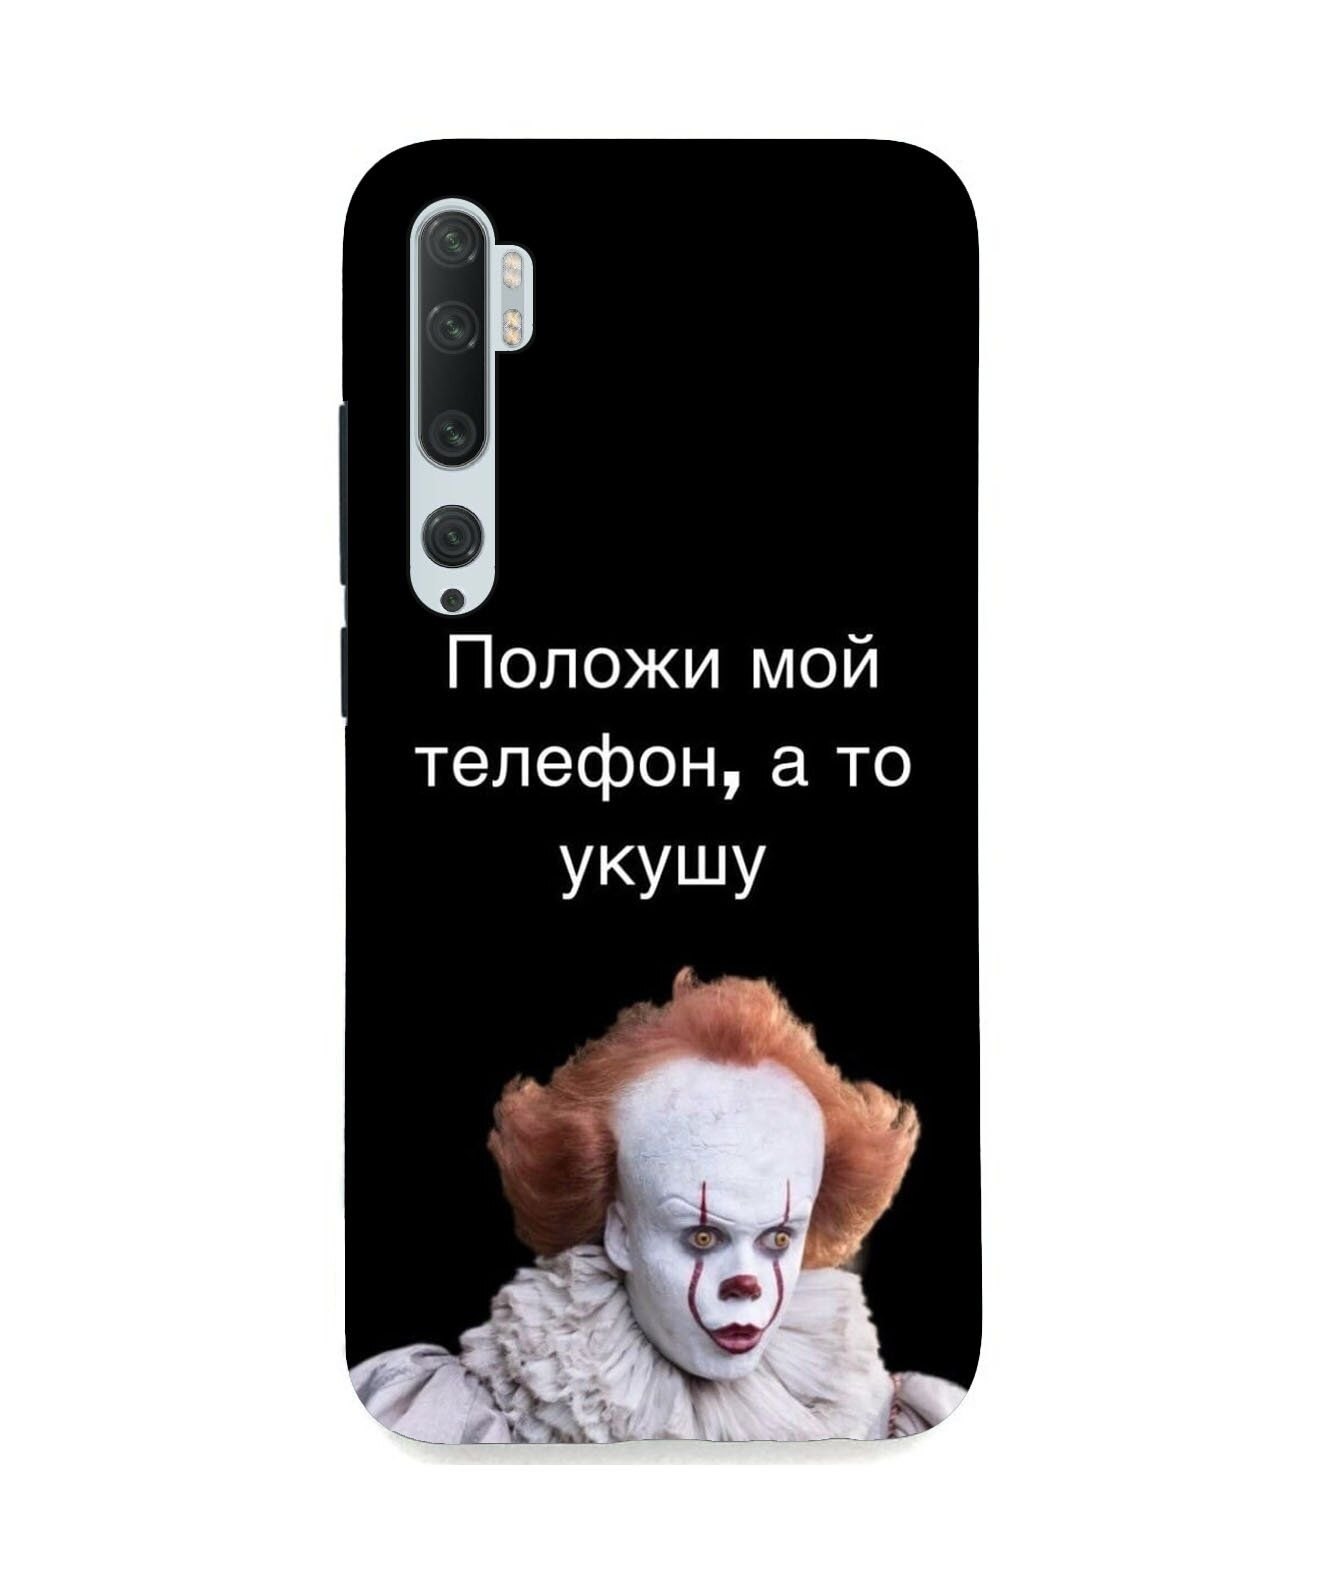 Красивые обои на телефон с надписью не трогай мой телефон на русском